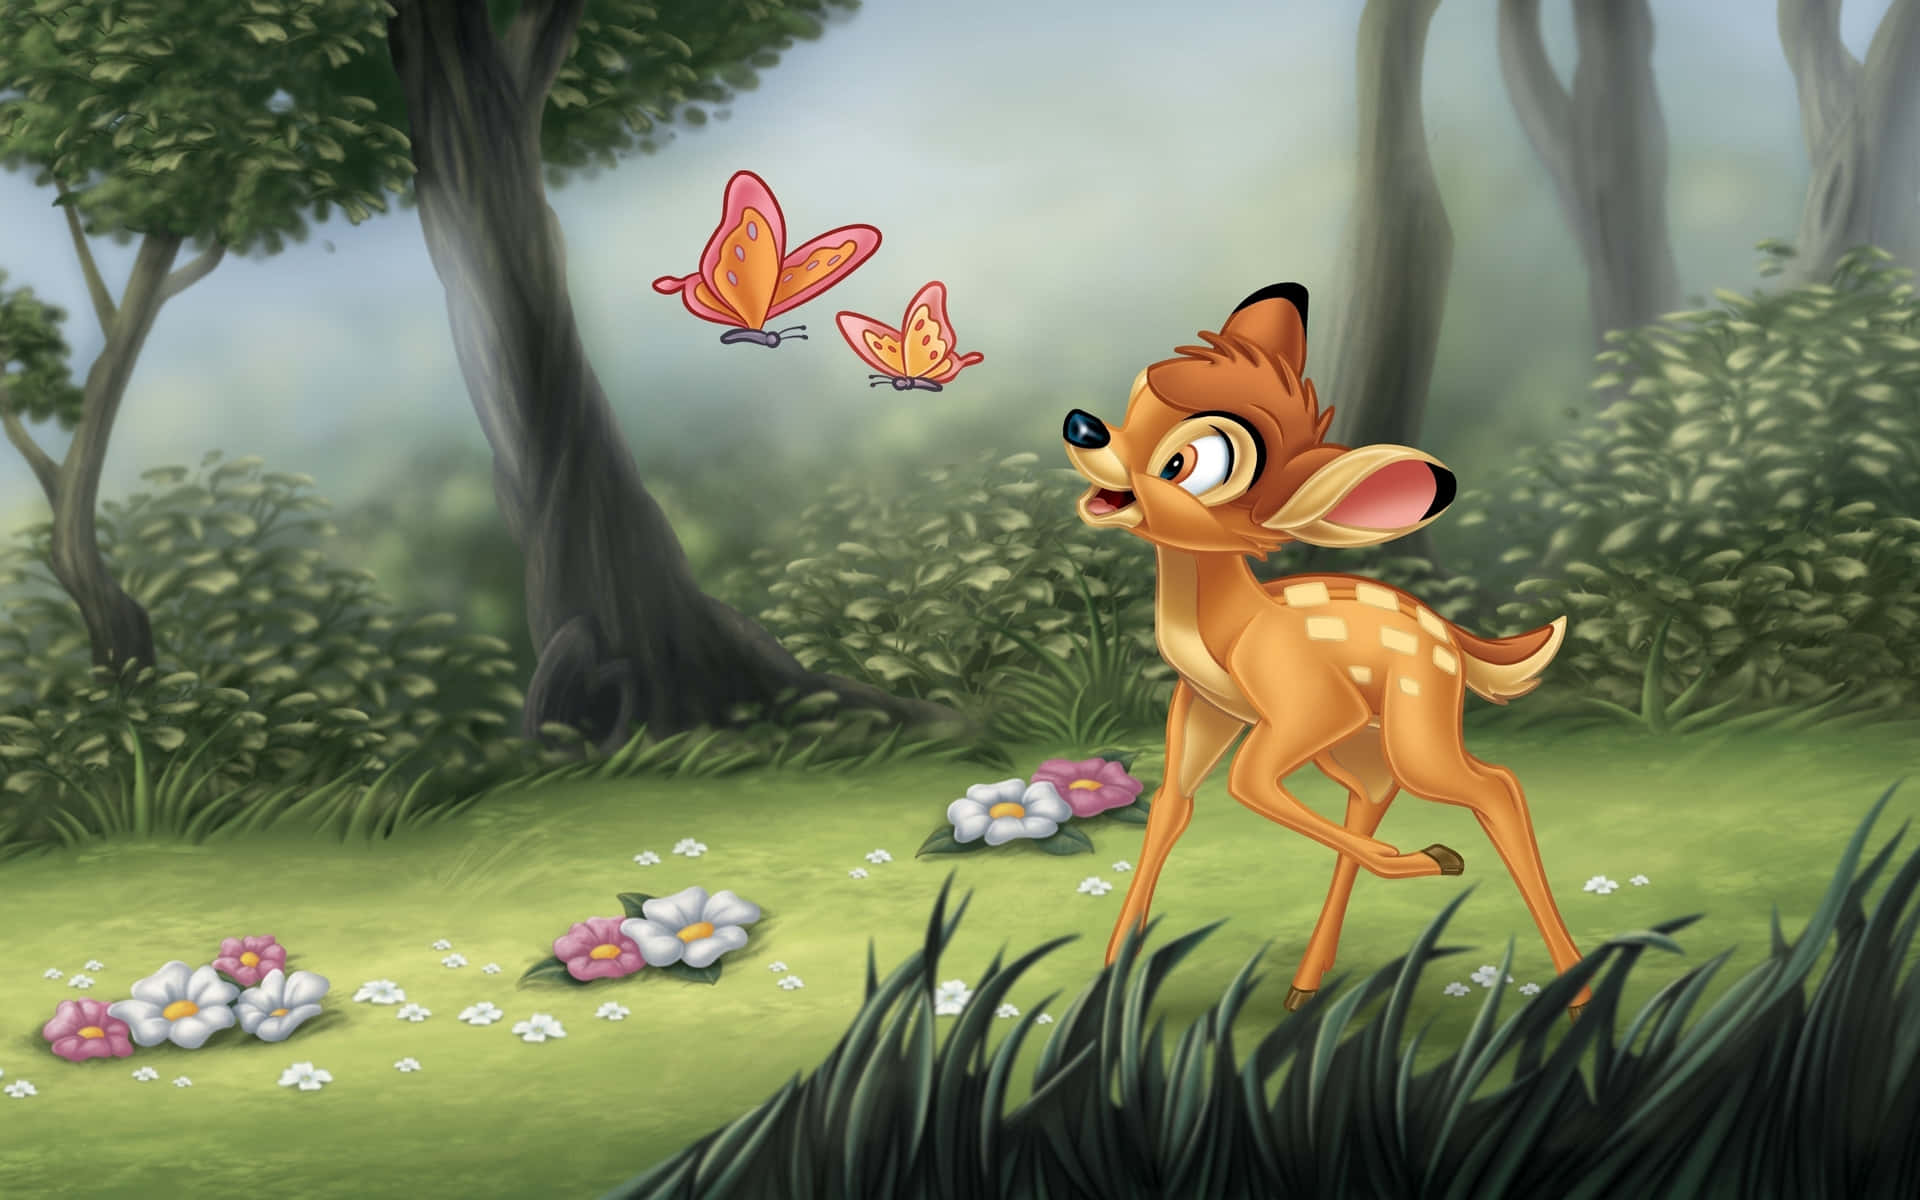 Bambi, Disney's lovable deer